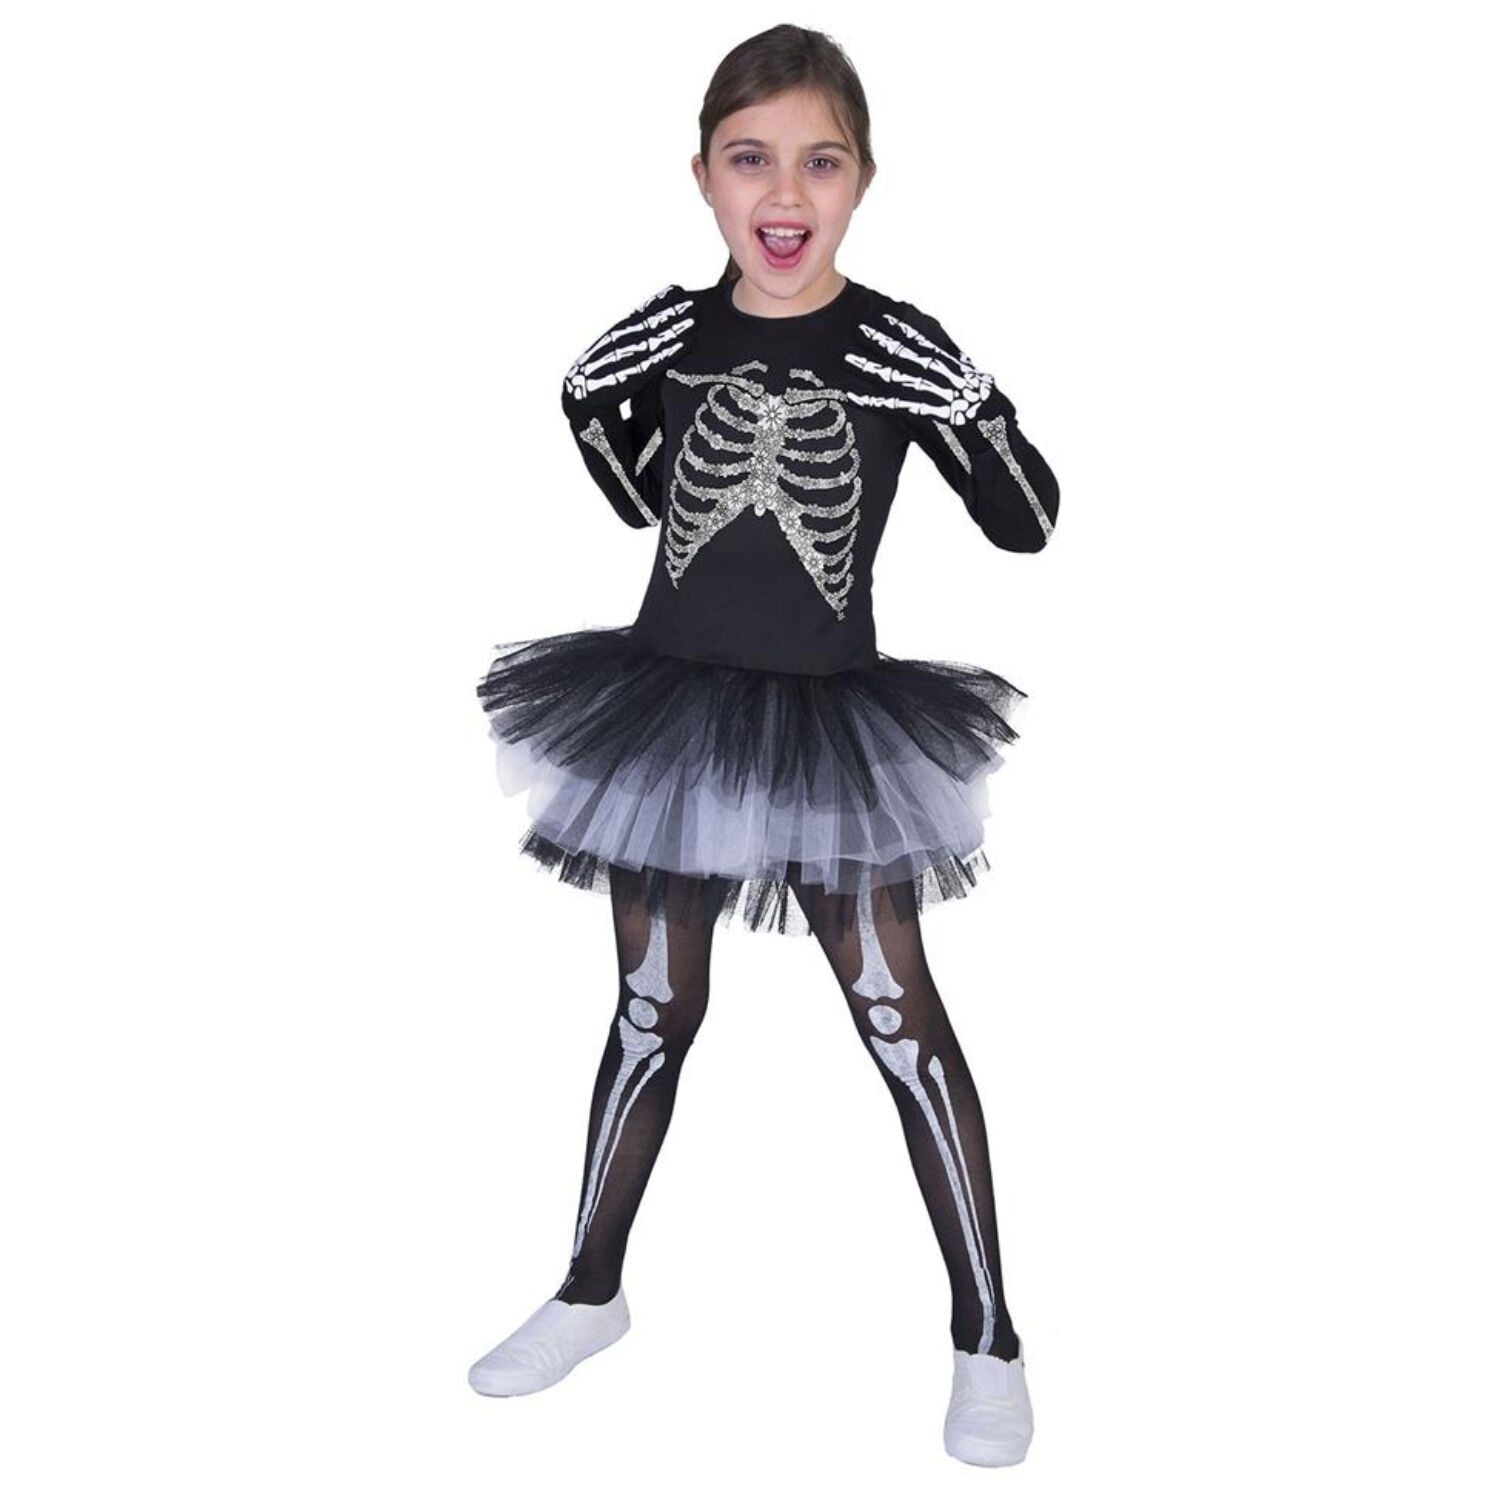 NEU Kinder-Kostm Skelett-Kleid Suzy, mit Knochenaufdruck und Tllrock, Gr. 128